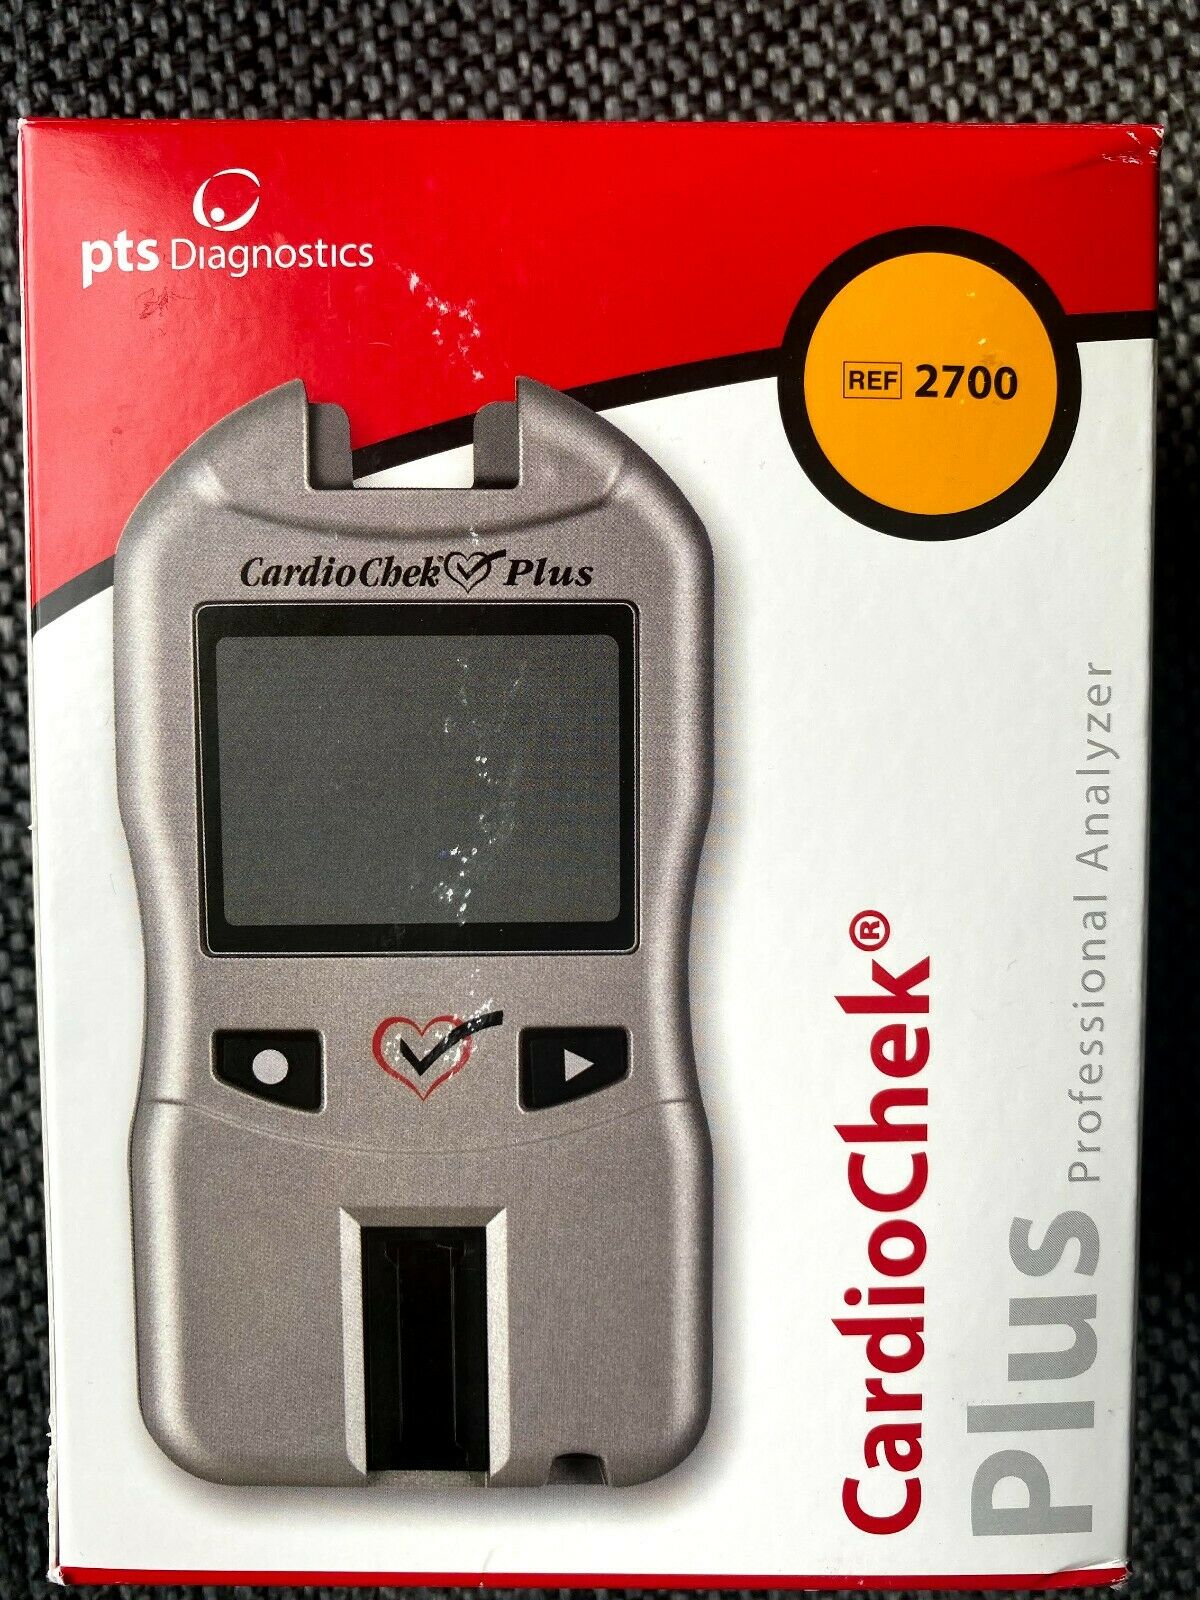 Cardiochek Plus Pro Analyzer Only $499